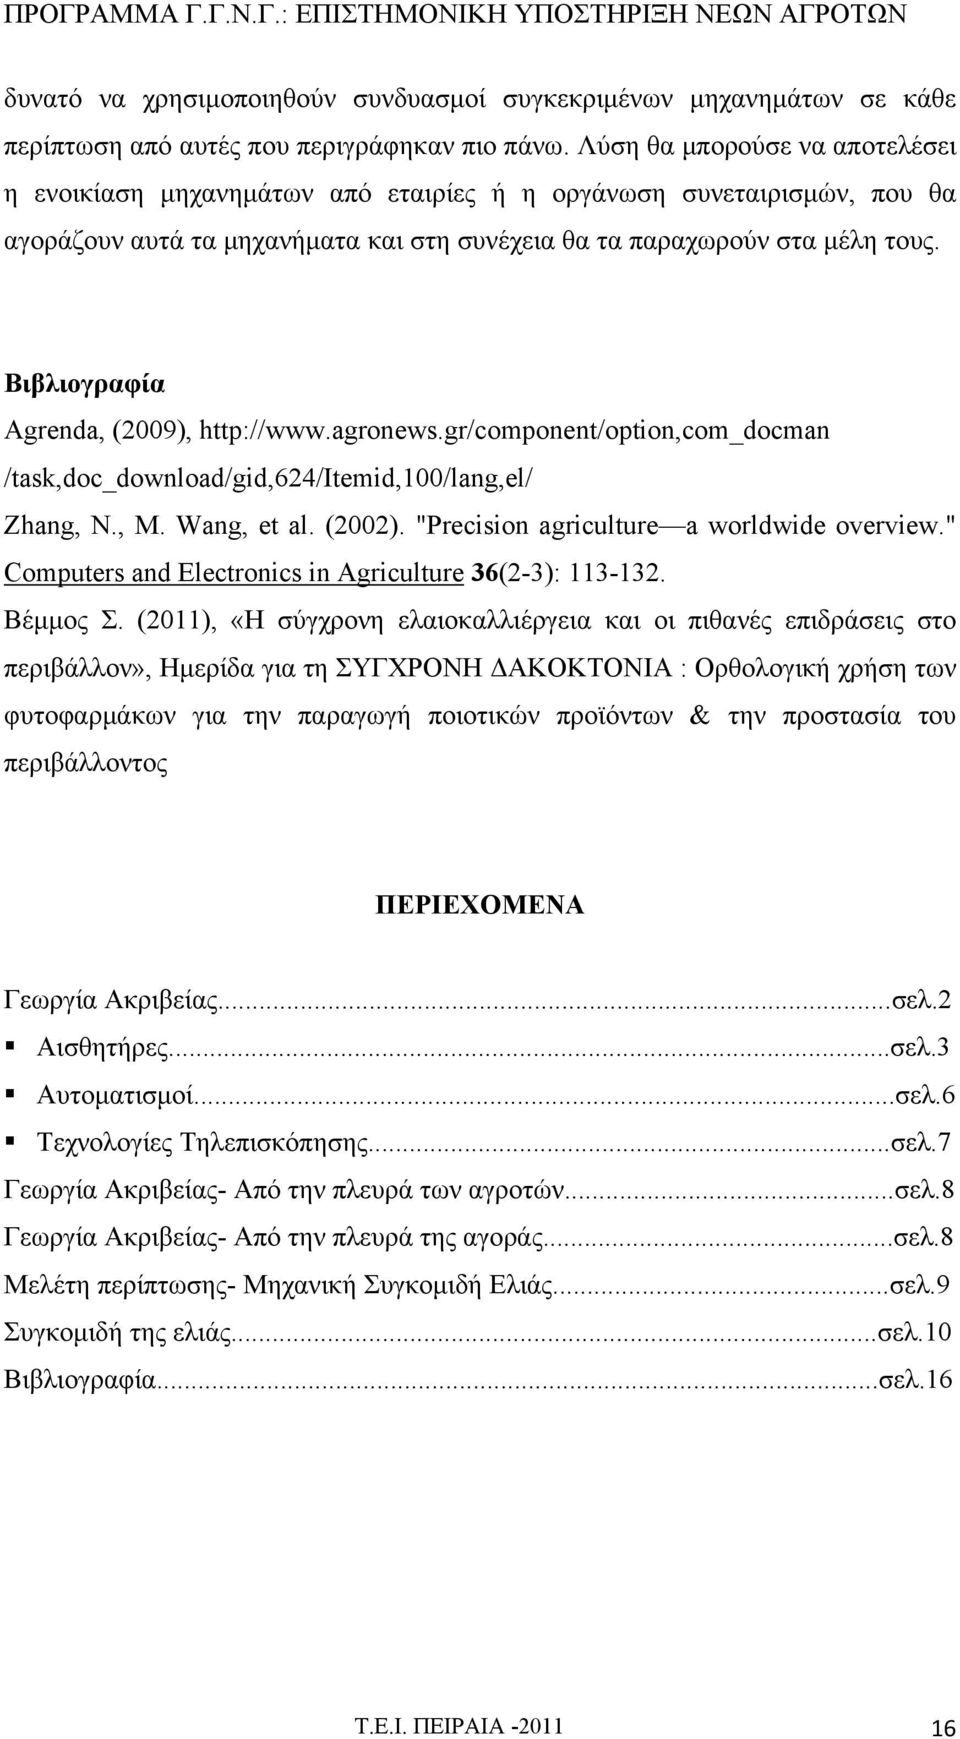 Βιβλιογραφία Agrenda, (2009), http://www.agronews.gr/component/option,com_docman /task,doc_download/gid,624/itemid,100/lang,el/ Zhang, N., M. Wang, et al. (2002).